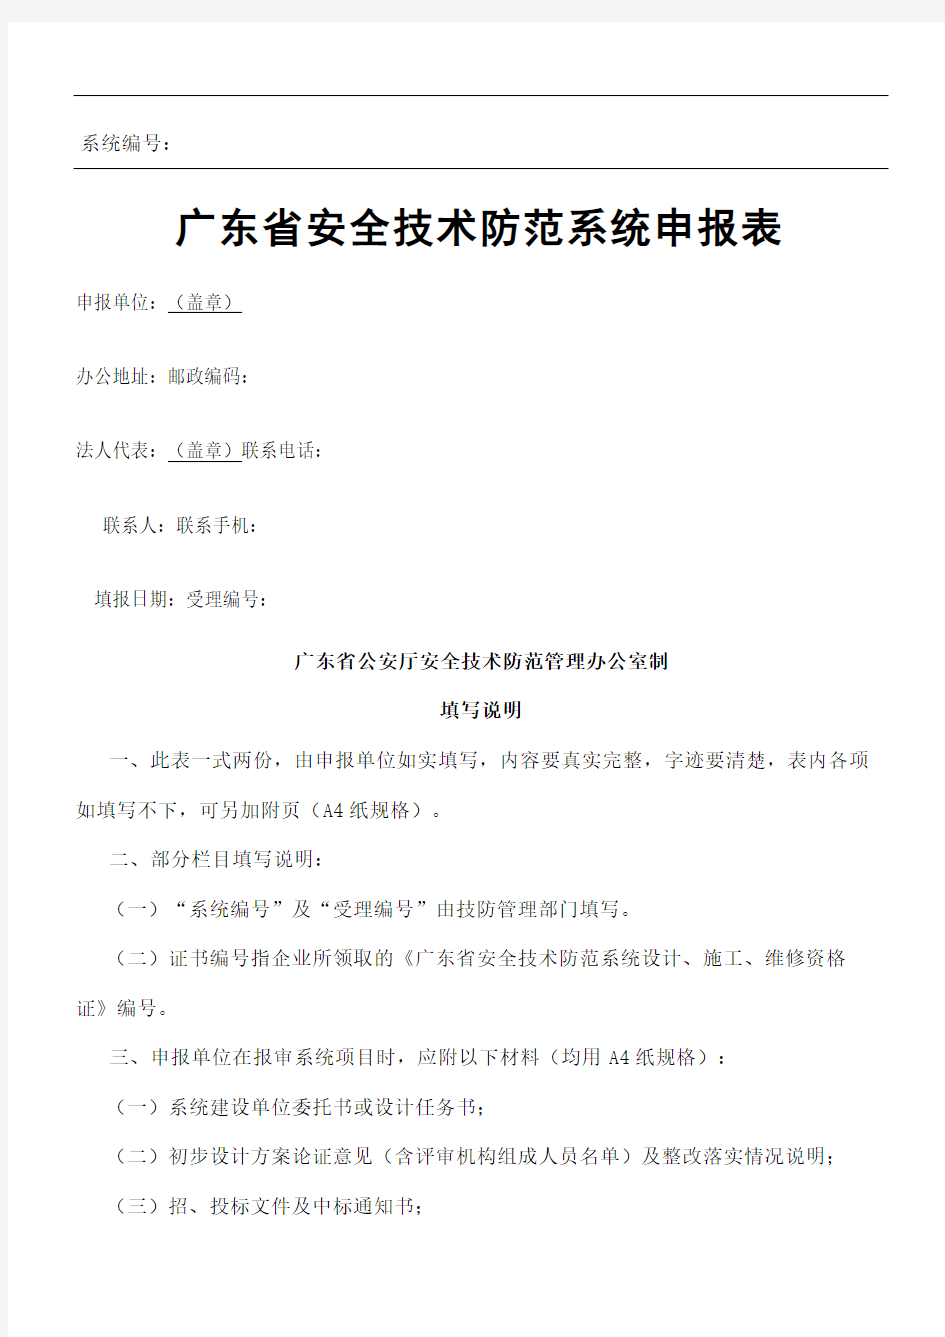 广东省安全技术防范系统申报表新版